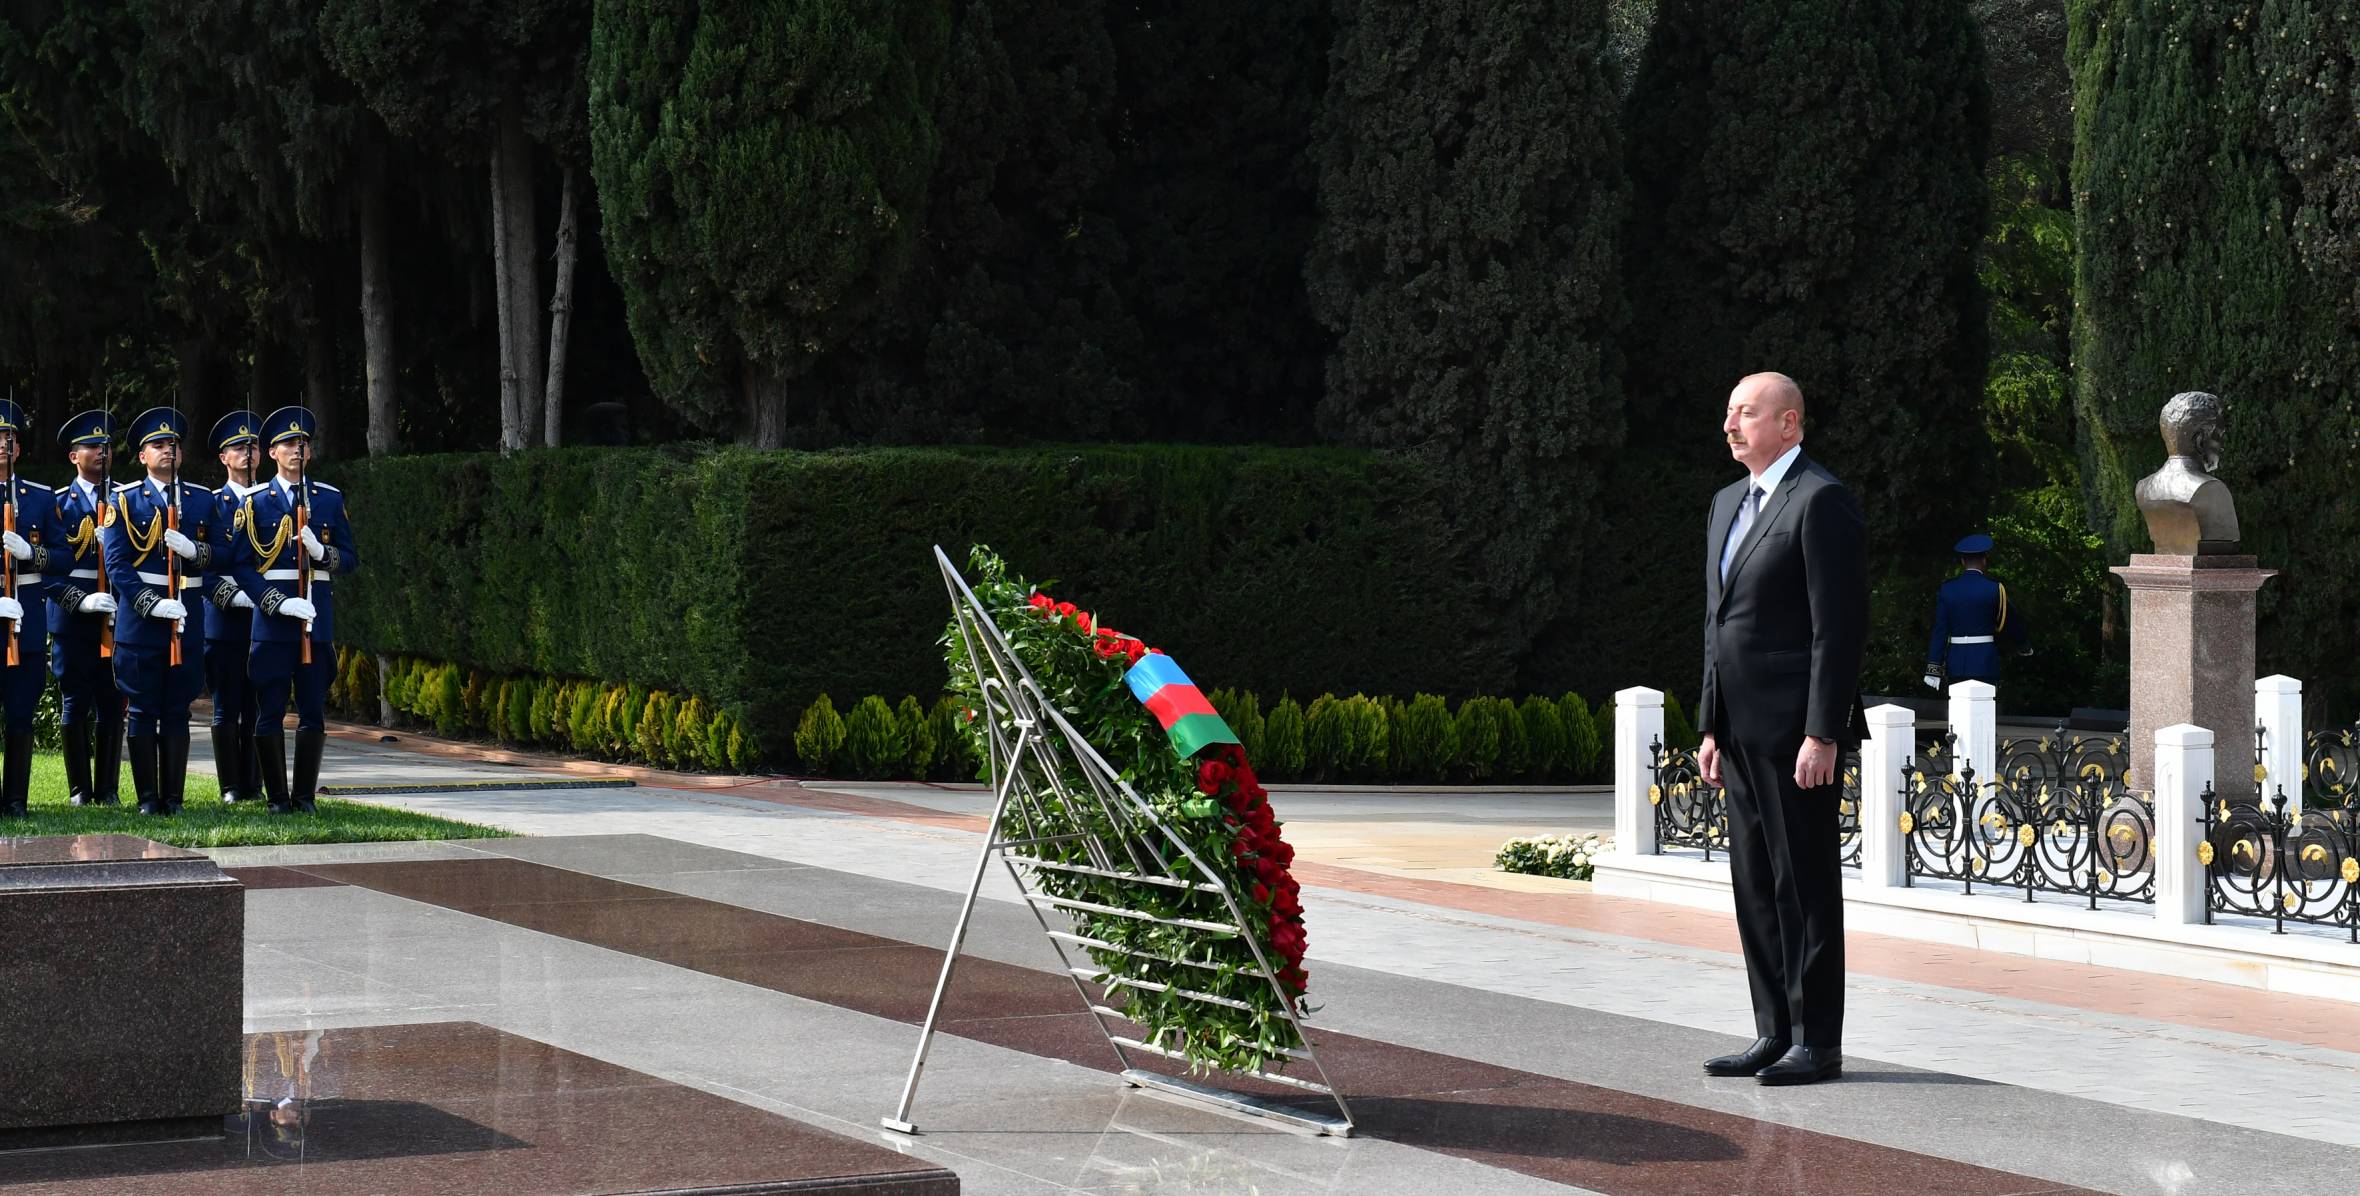 Ilham Aliyev, First Lady Mehriban Aliyeva and their family members visited tomb of Great Leader Heydar Aliyev in Alley of Honors